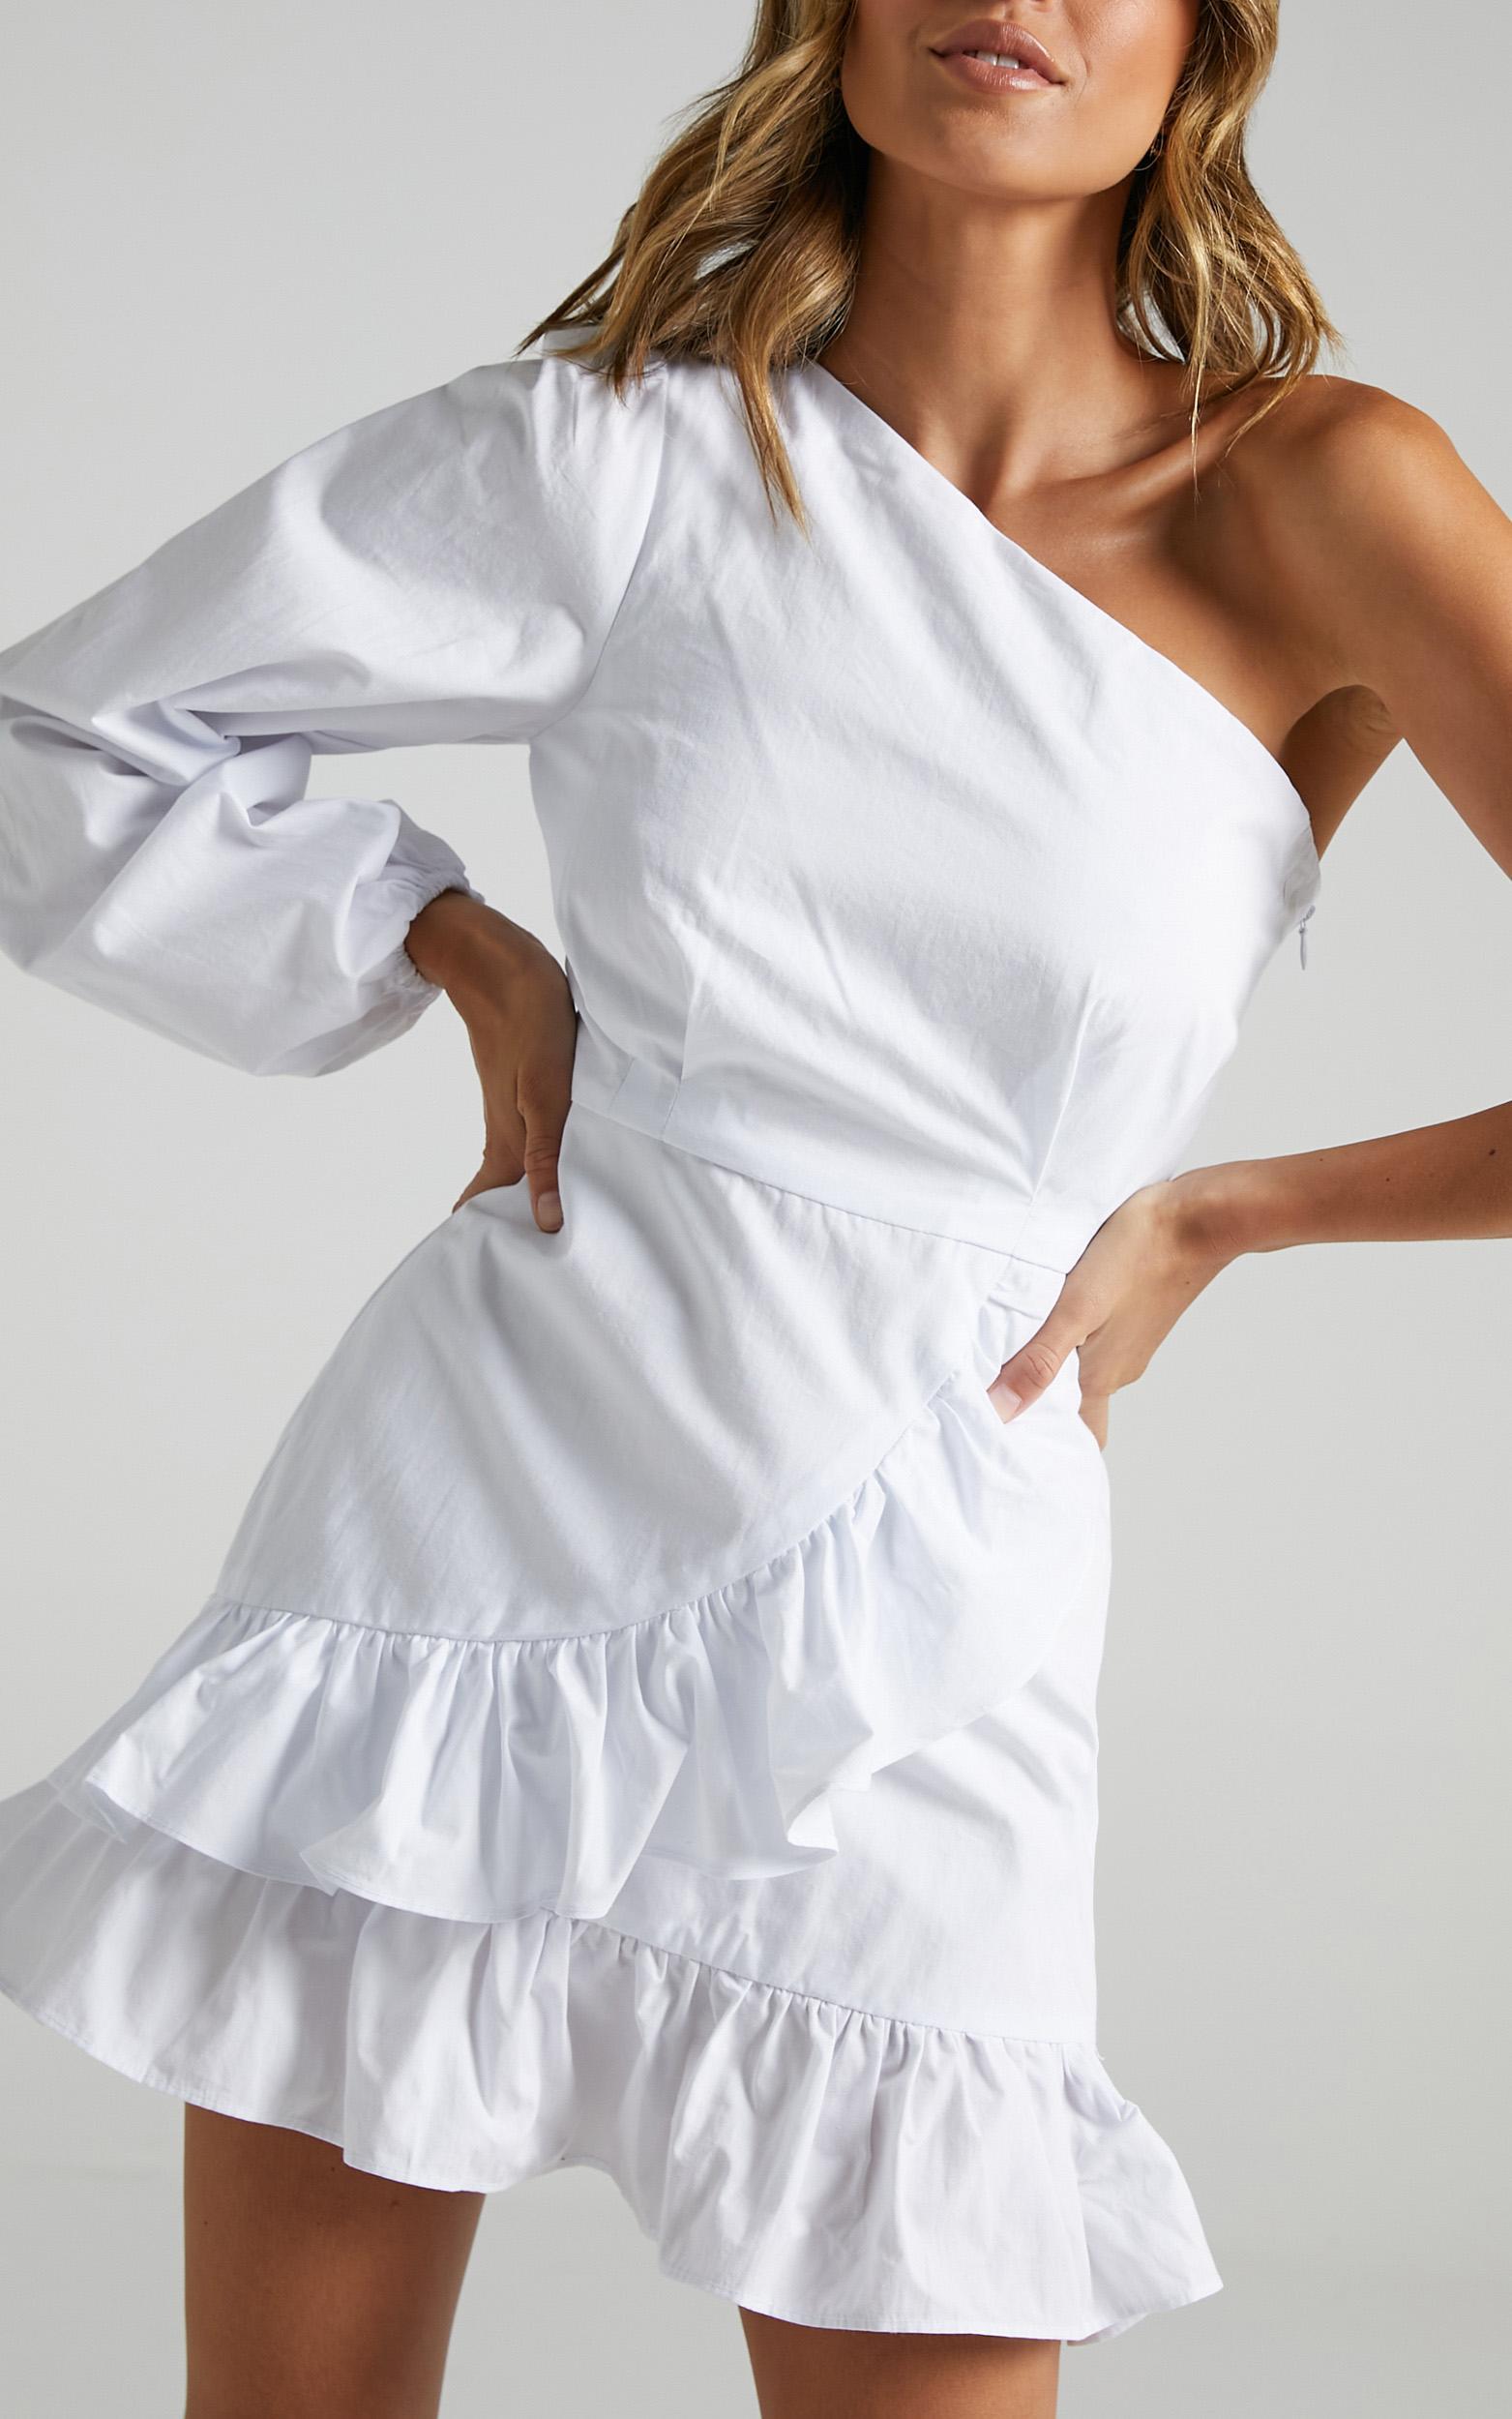 Udele Dress in White - 06, WHT3, hi-res image number null